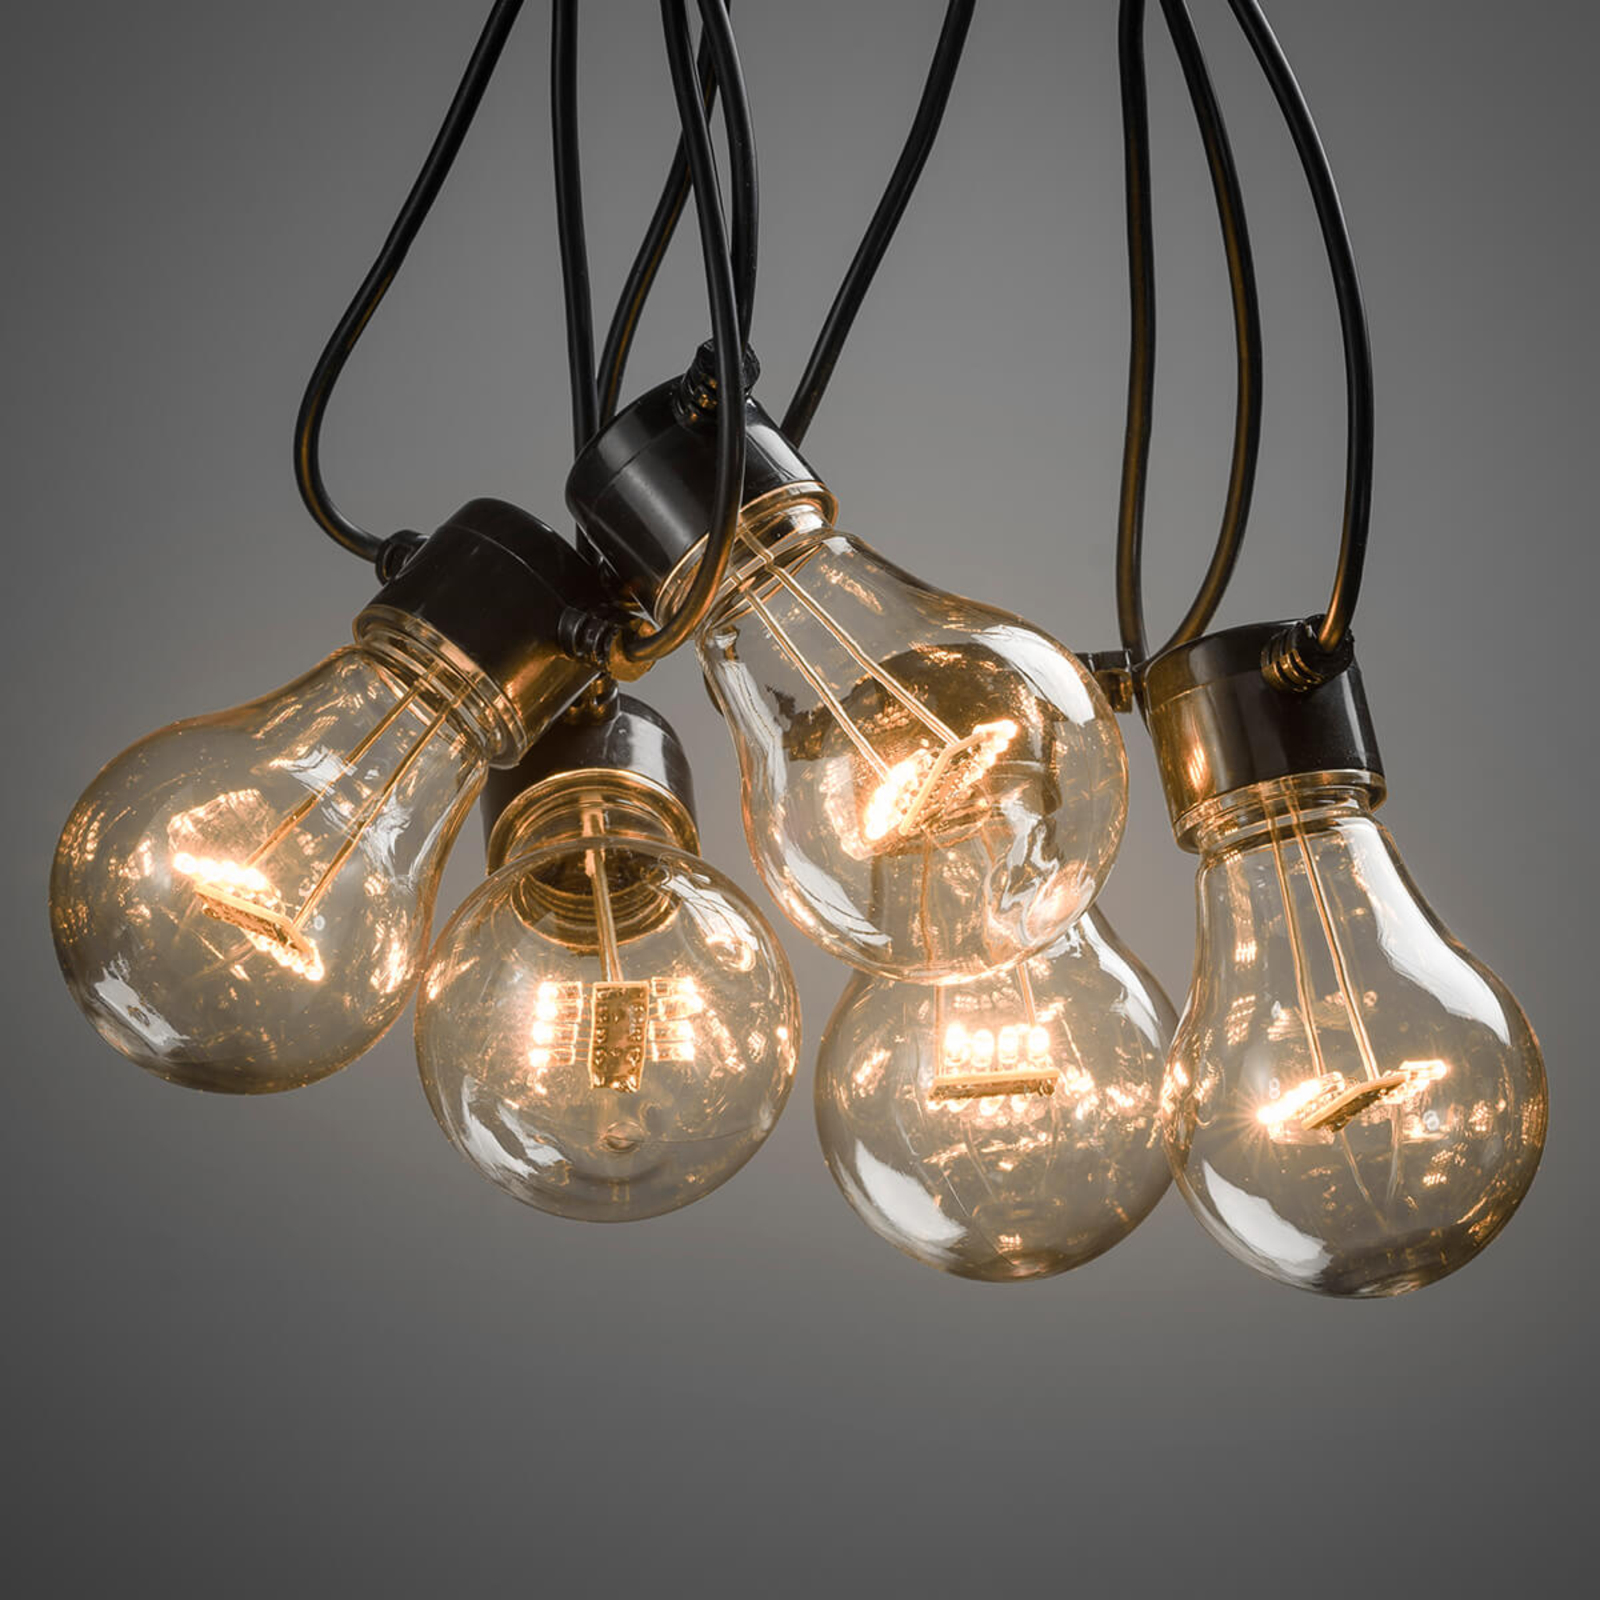 Guirlande Biergarten 20 ampoules transparent ambre